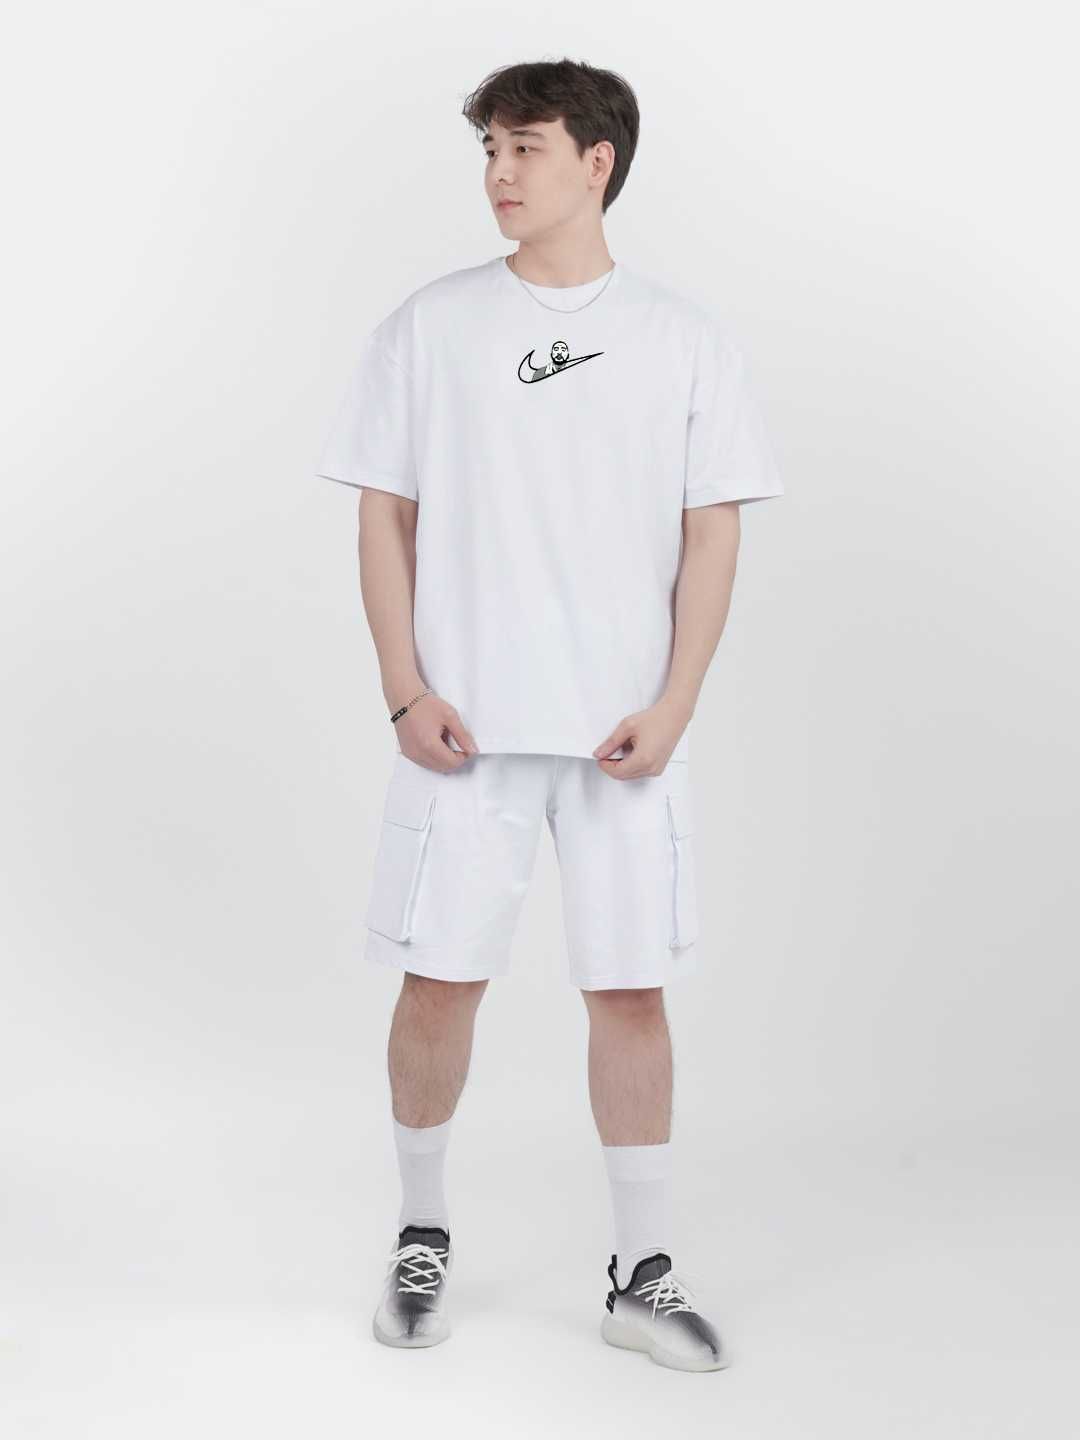 Мужская футболка унисекс, Футболка с принтом Nike Скриптонит, летняя